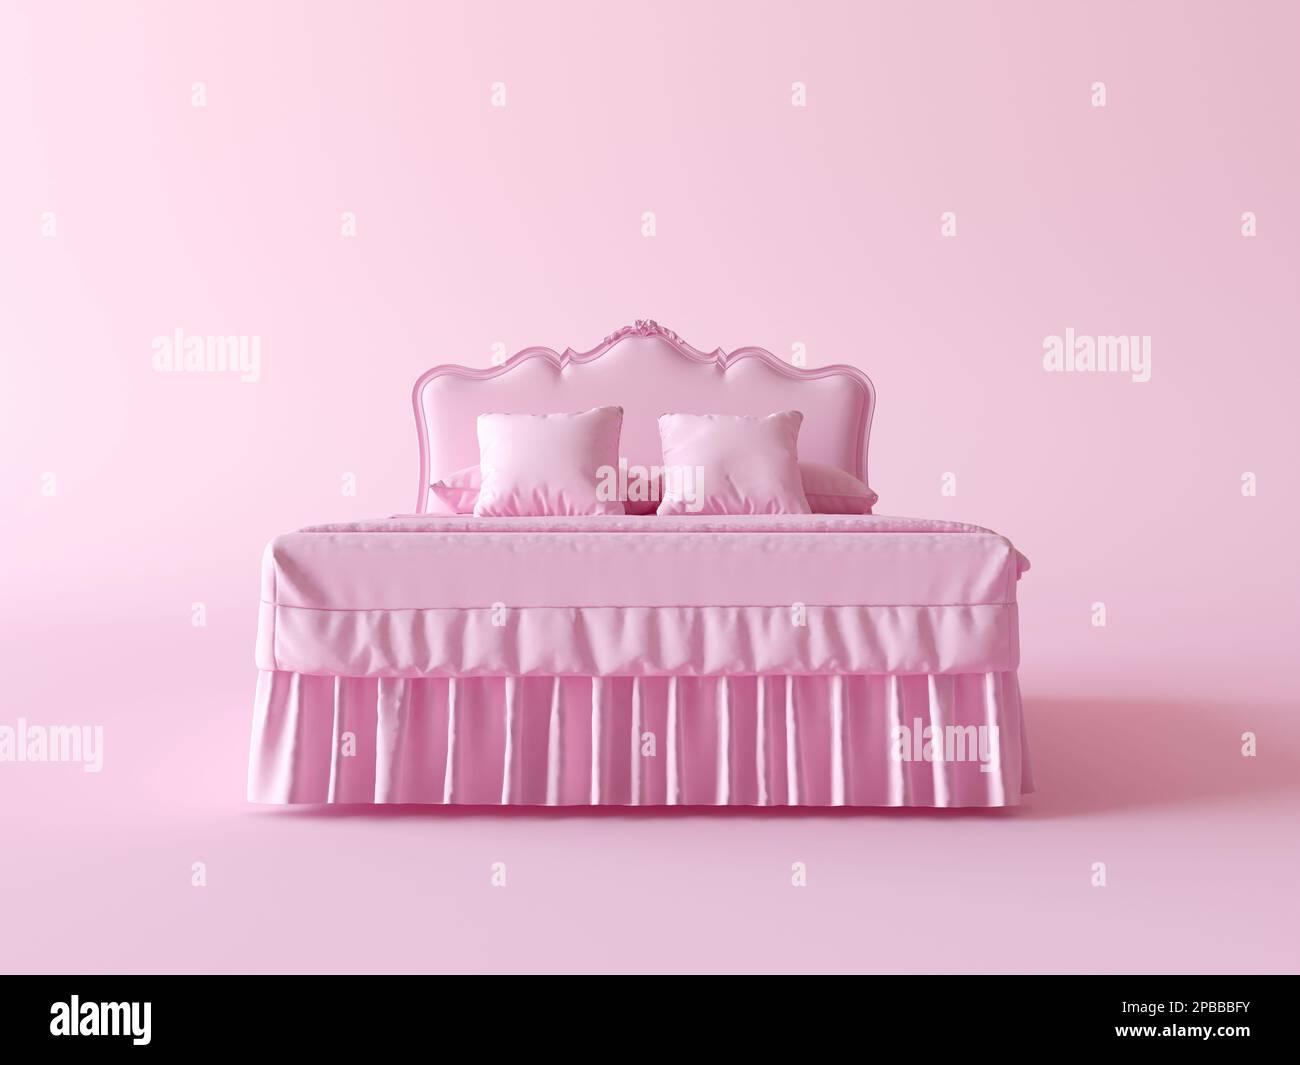 Konzept Vintage Bett Pink monochrome Komposition. Kreative Idee mit minimalem Papierverbrauch. Modell mit Kingsize-Bett auf hellem Hintergrund mit Kopierbereich. 3D-Rendern Stockfoto